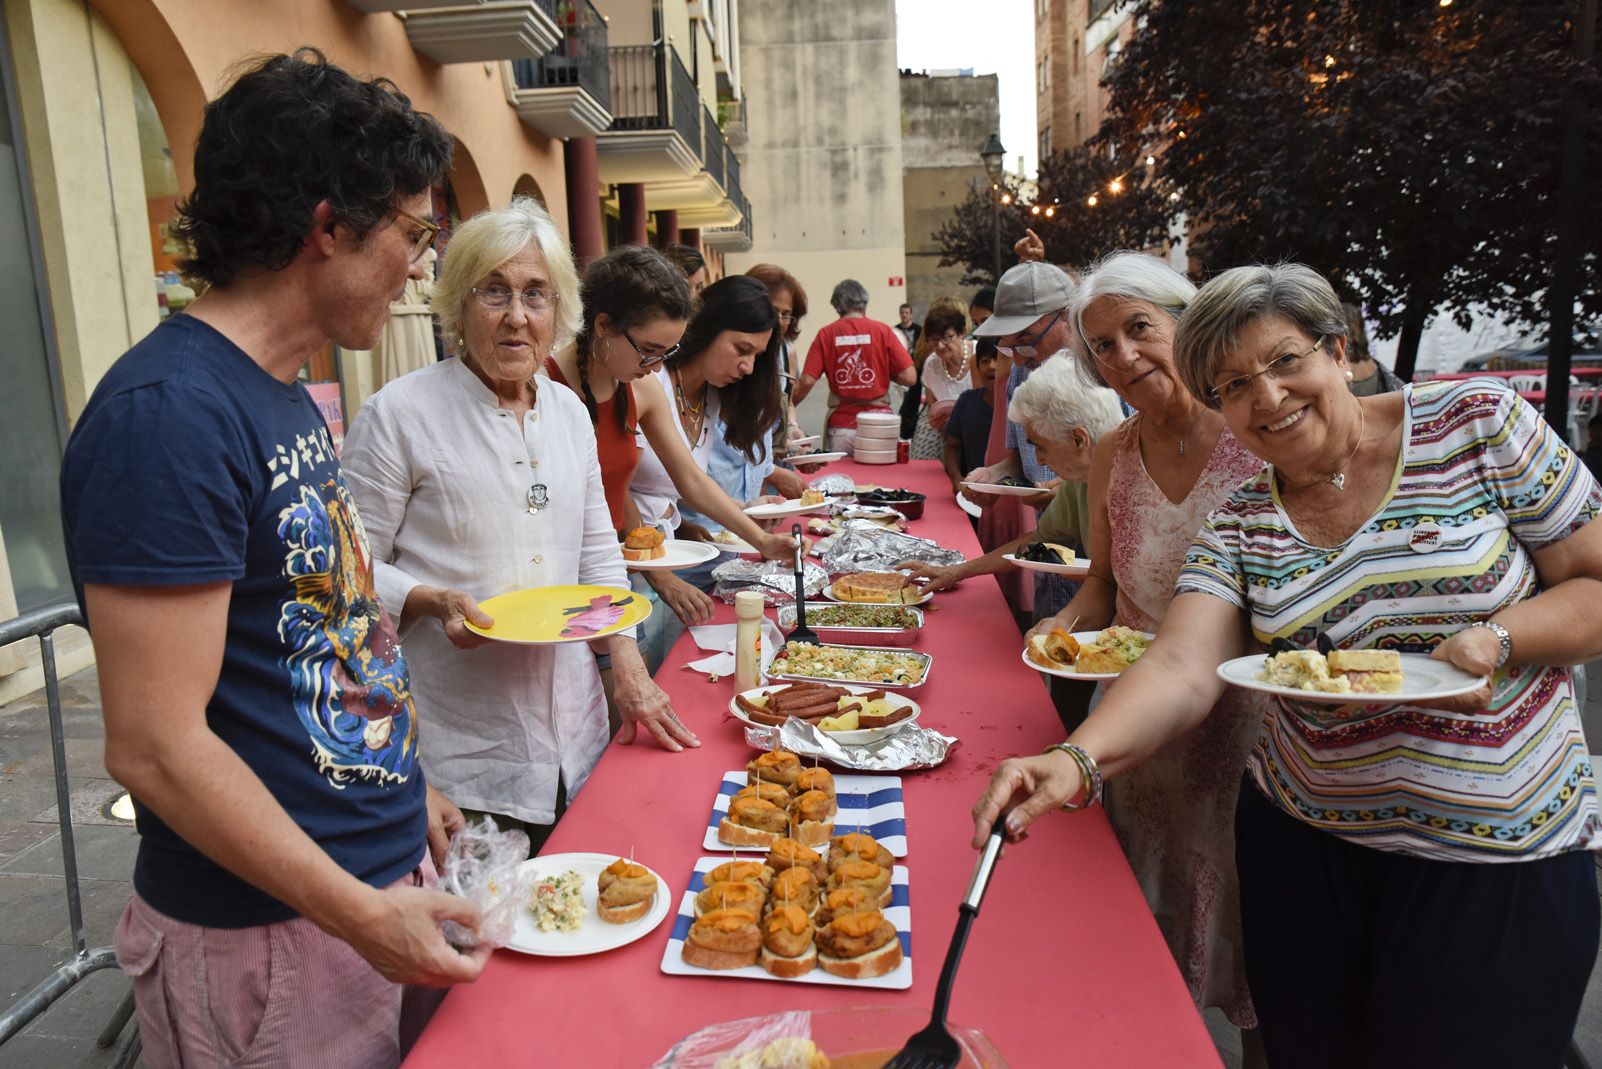 Sopar popular del barri Centre Estació. Foto: Bernat Millet.